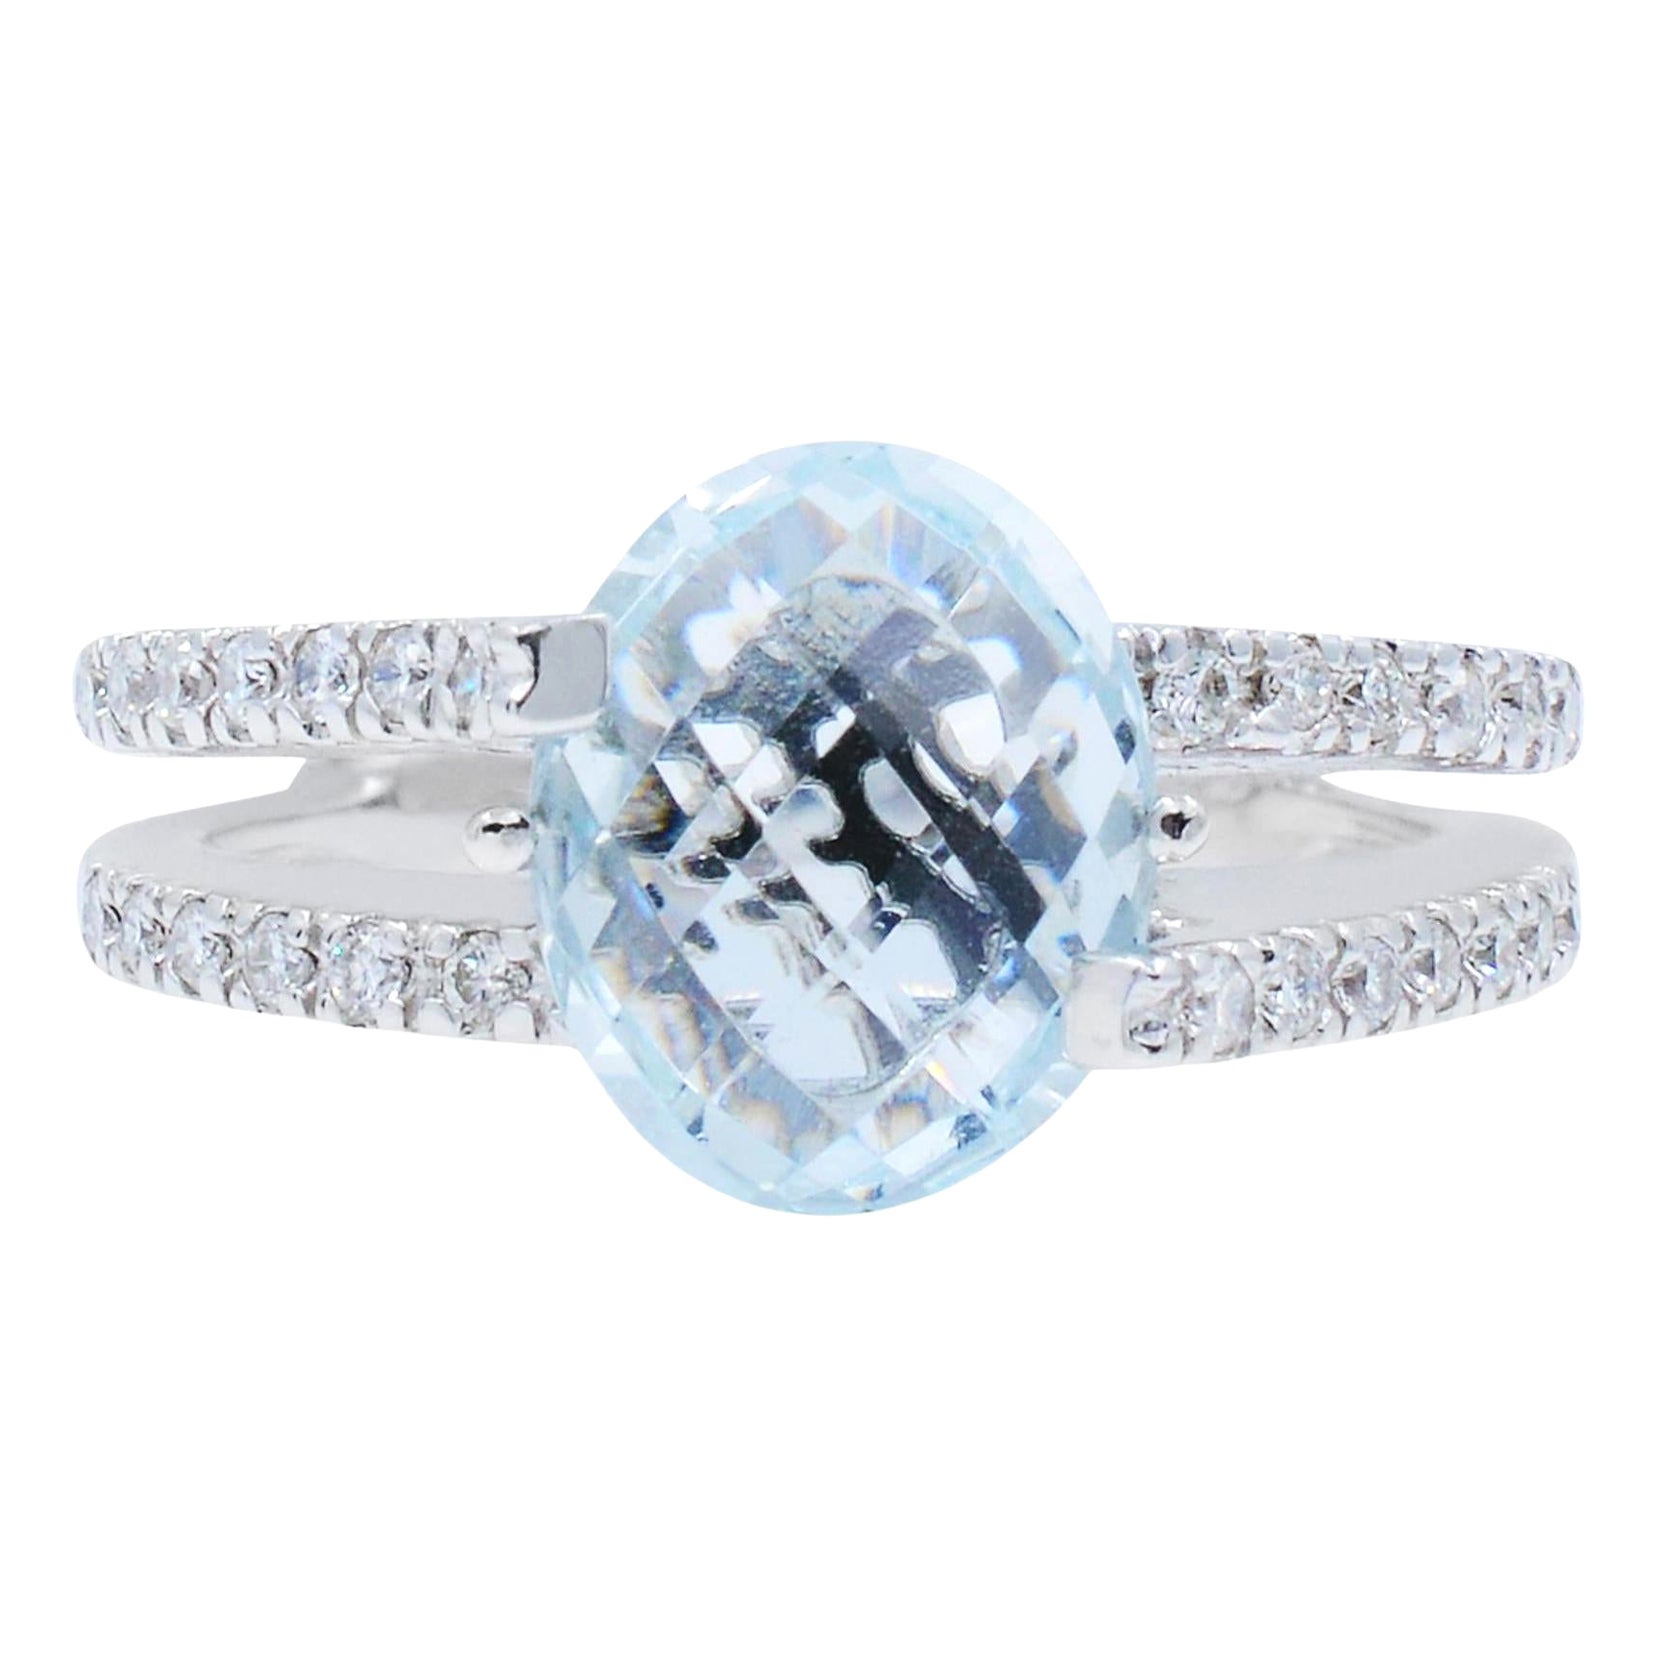 Rachel Koen Aquamarine Diamond Ring 18K White Gold 0.21Cttw For Sale